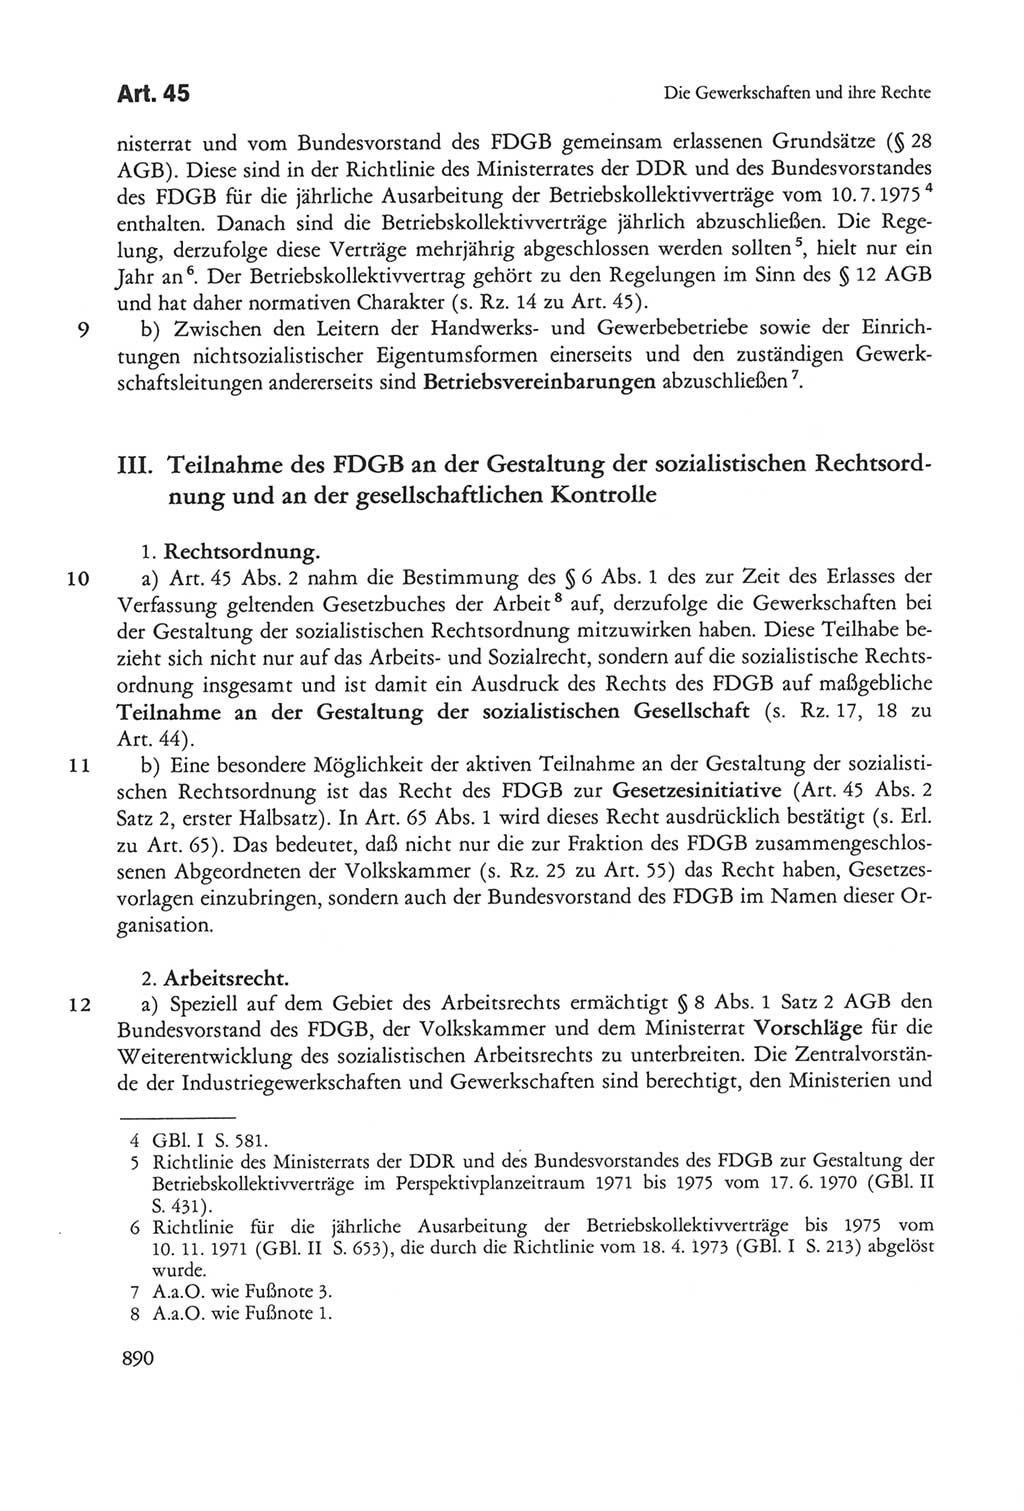 Die sozialistische Verfassung der Deutschen Demokratischen Republik (DDR), Kommentar 1982, Seite 890 (Soz. Verf. DDR Komm. 1982, S. 890)